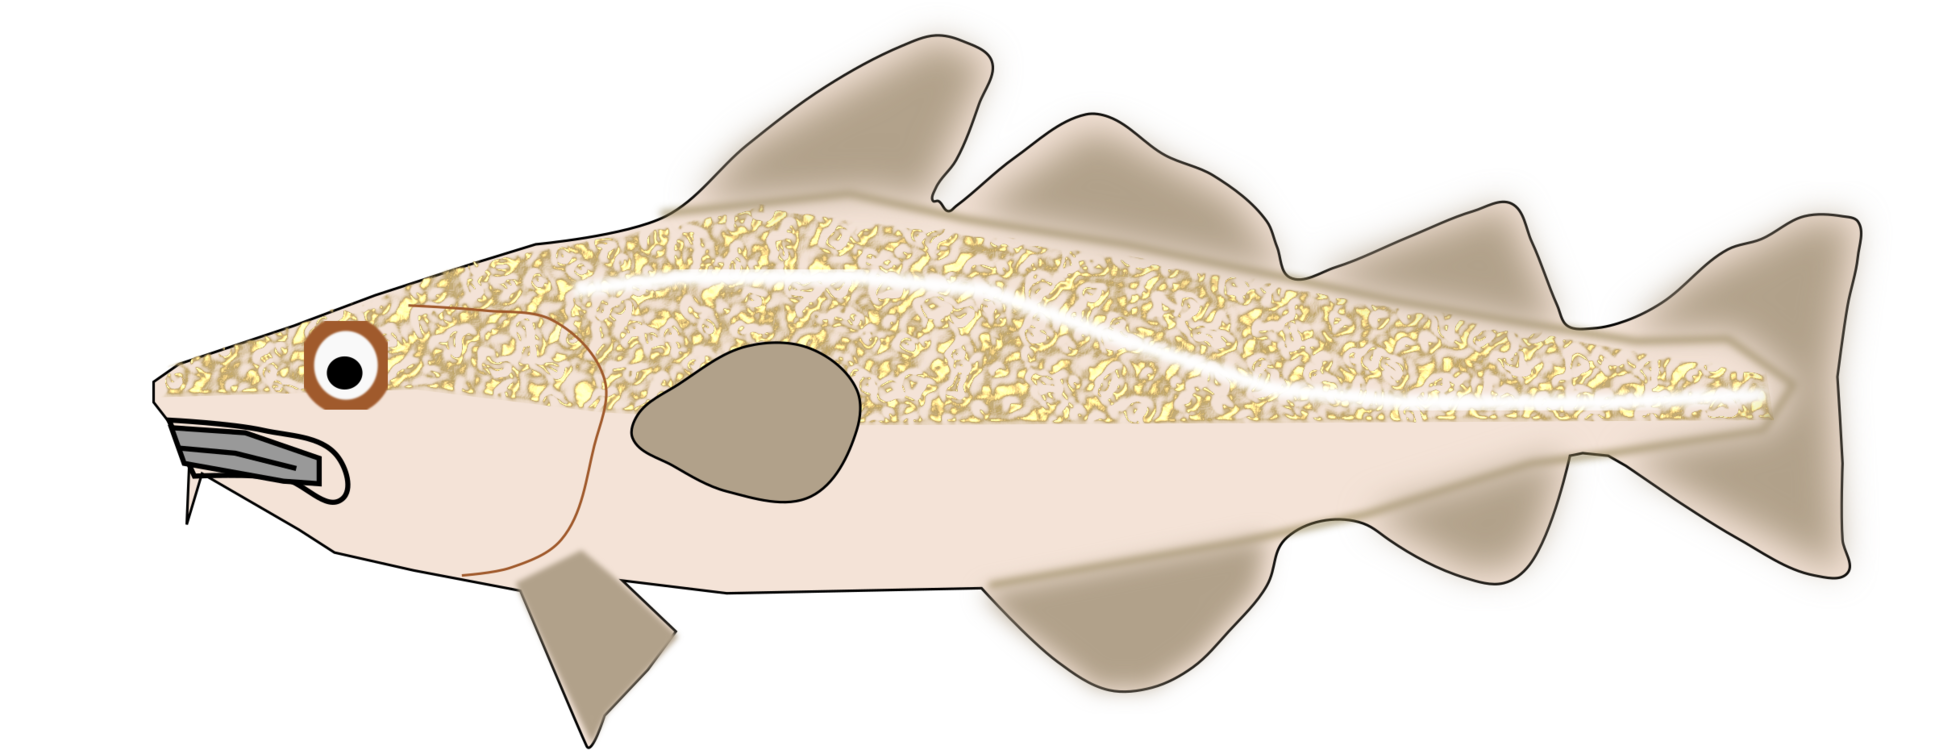 Atlantic Cod Transparent Image